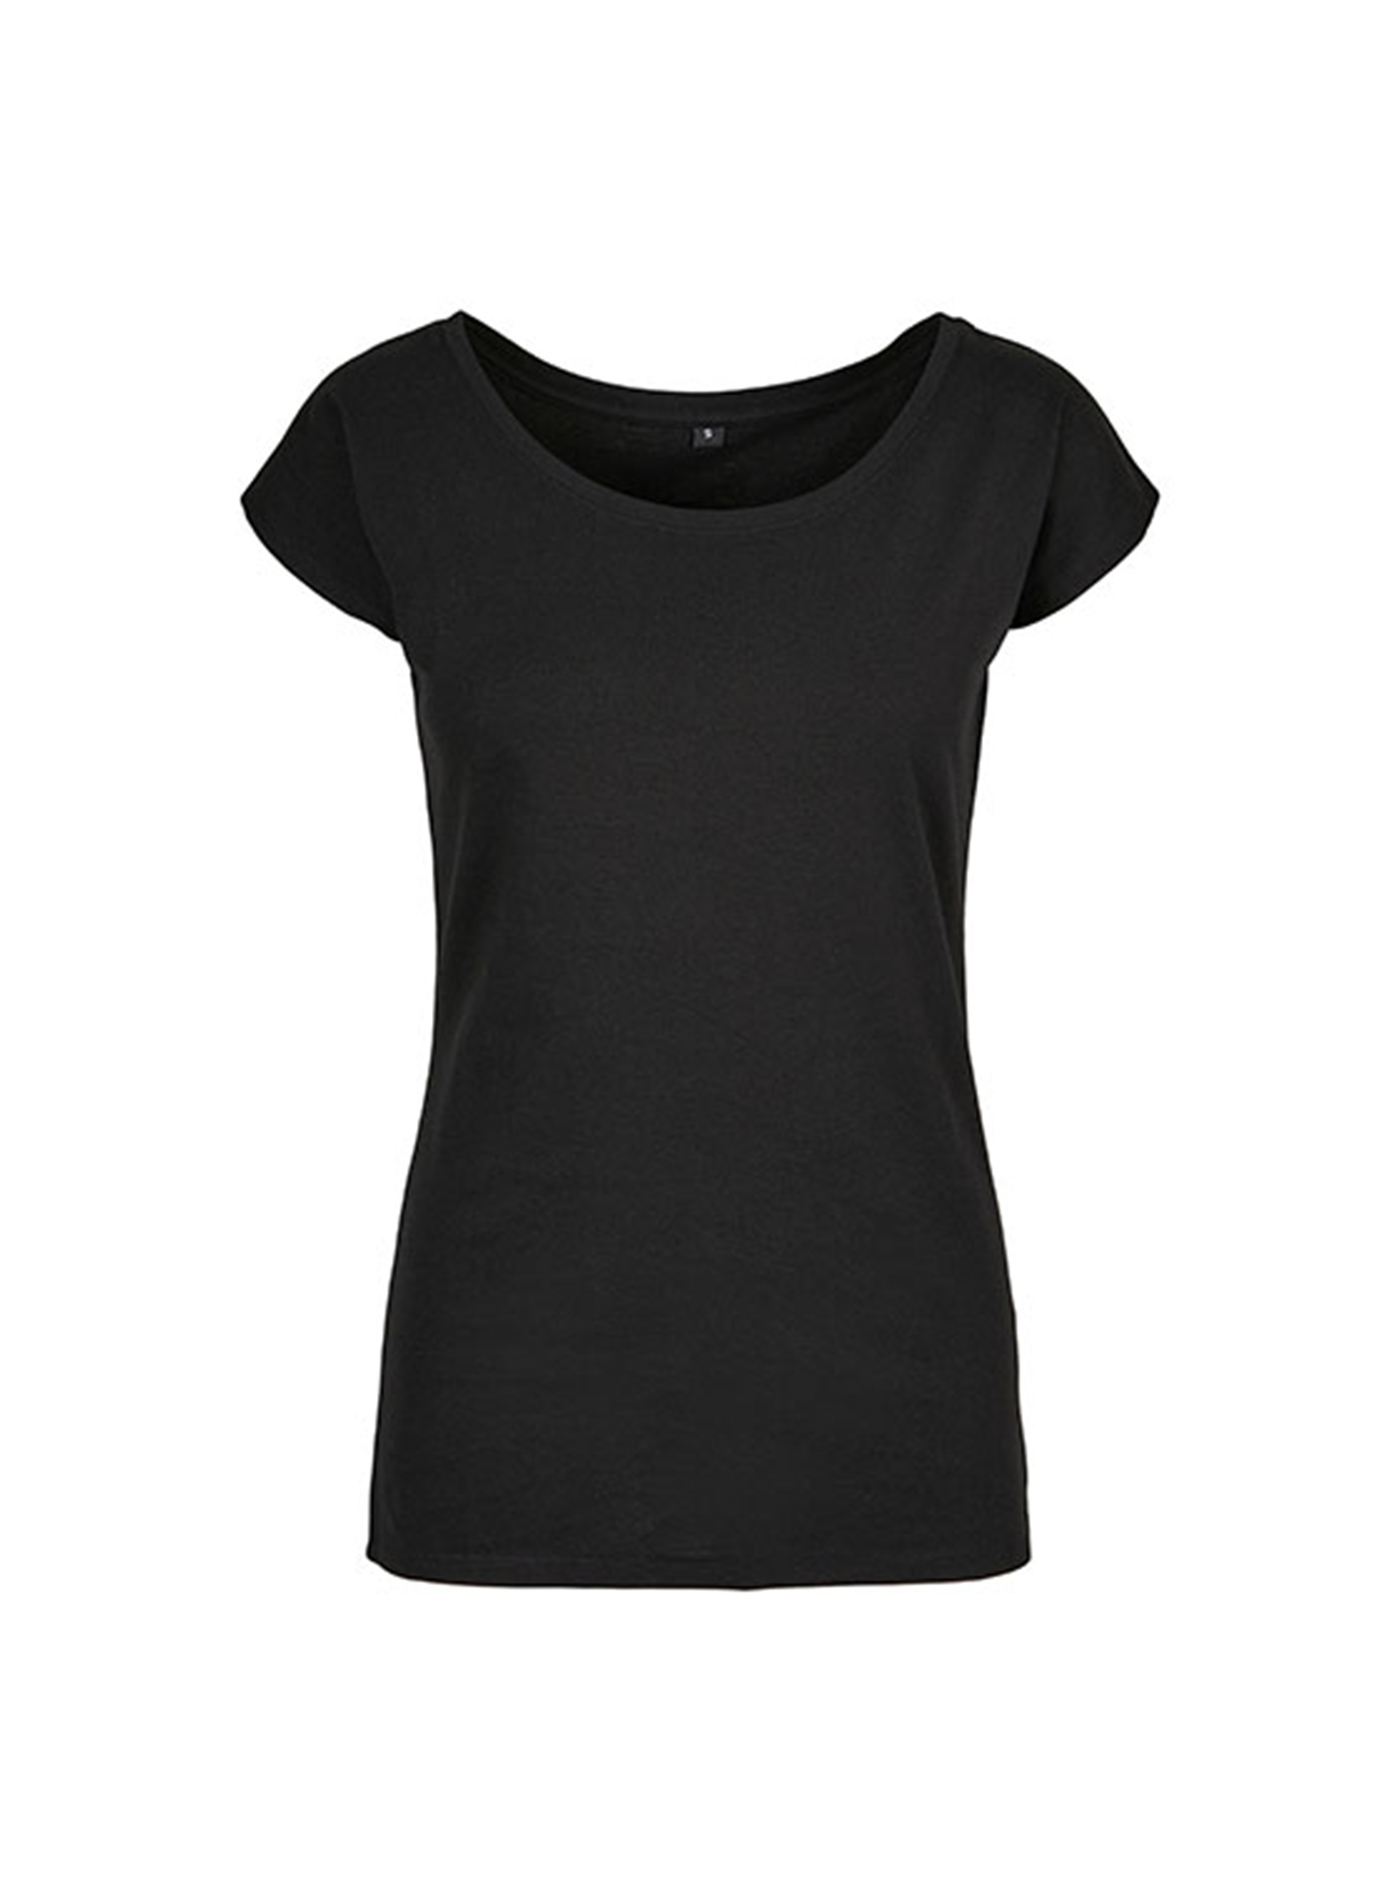 Dámské tričko s velkým výstřihem - Černá 4XL